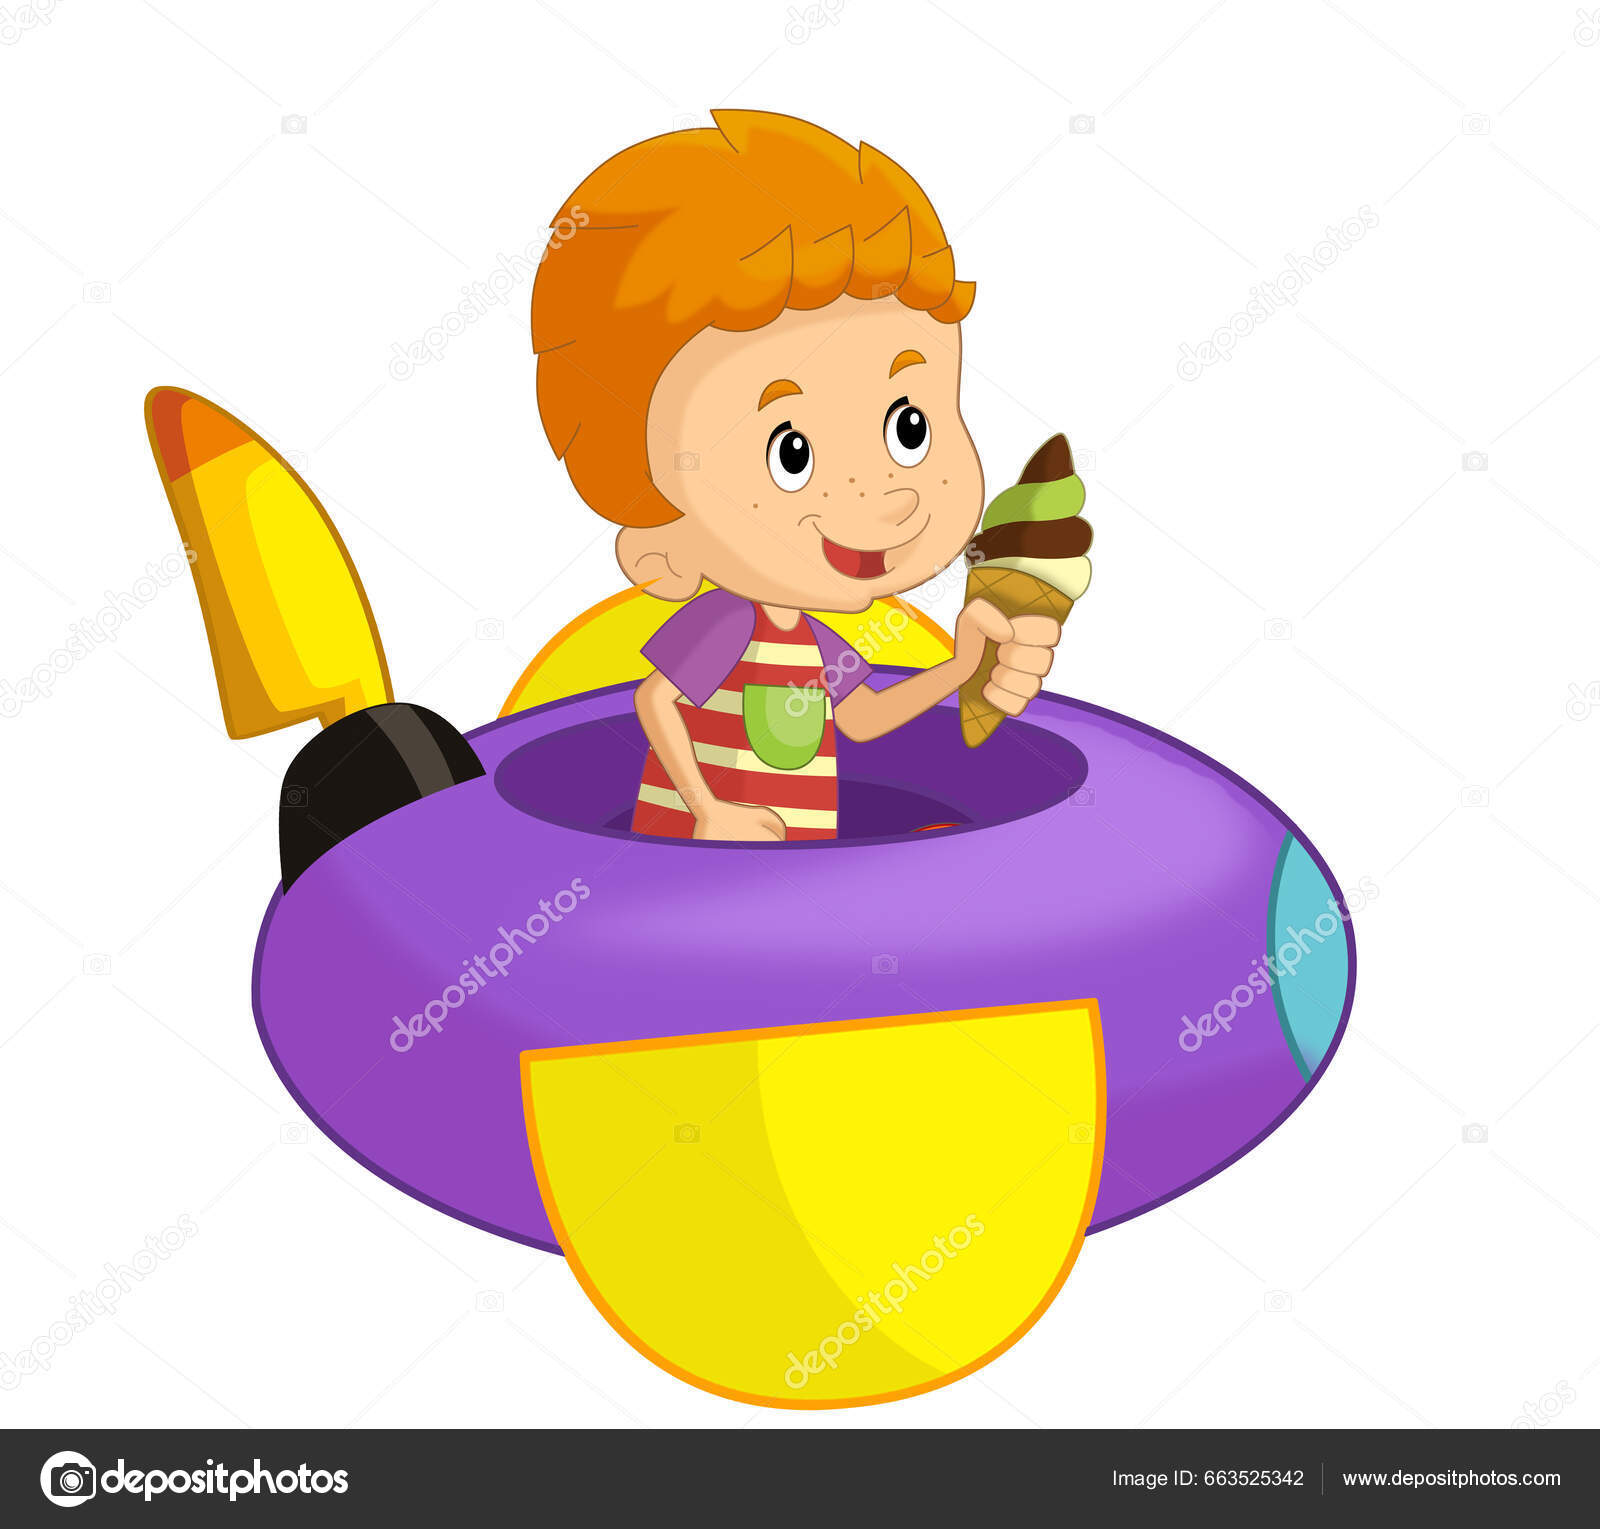 Avión de juguete para niños aislado